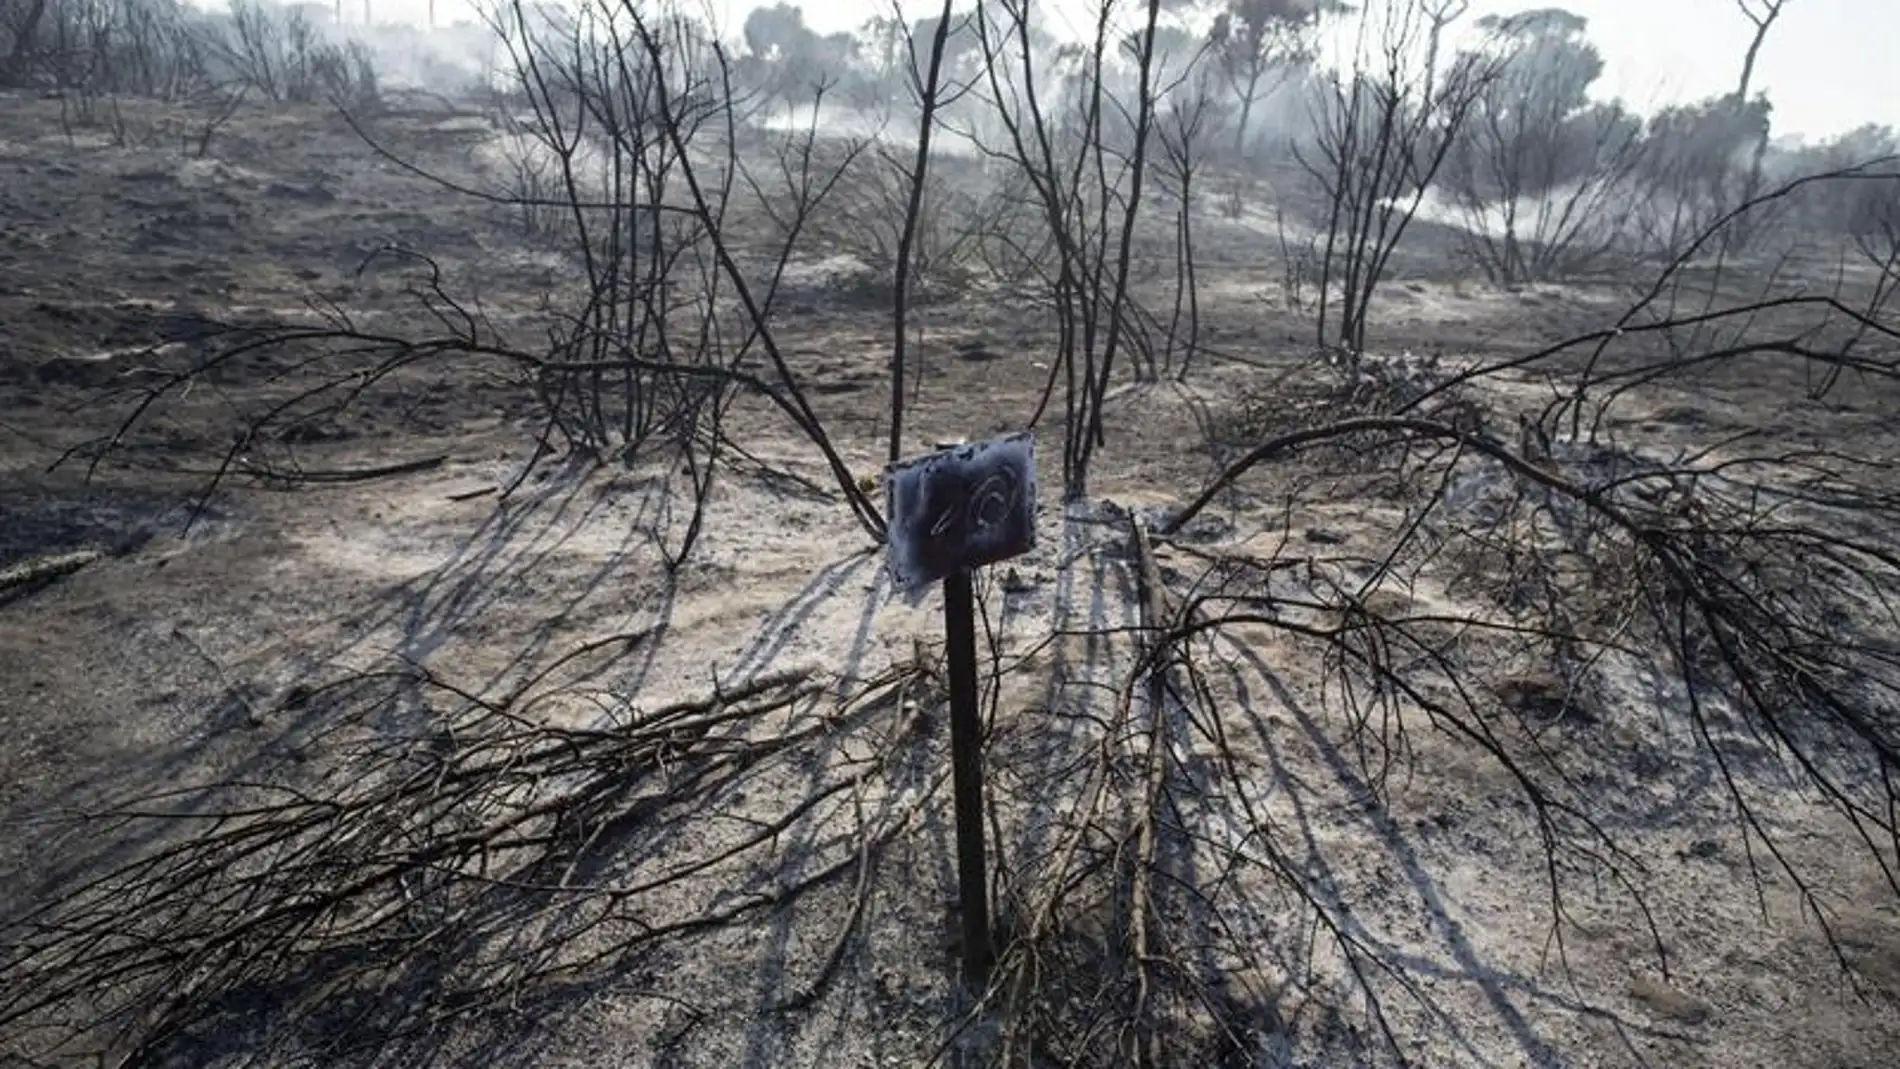 Bosque quemado tras un incendio en Italia